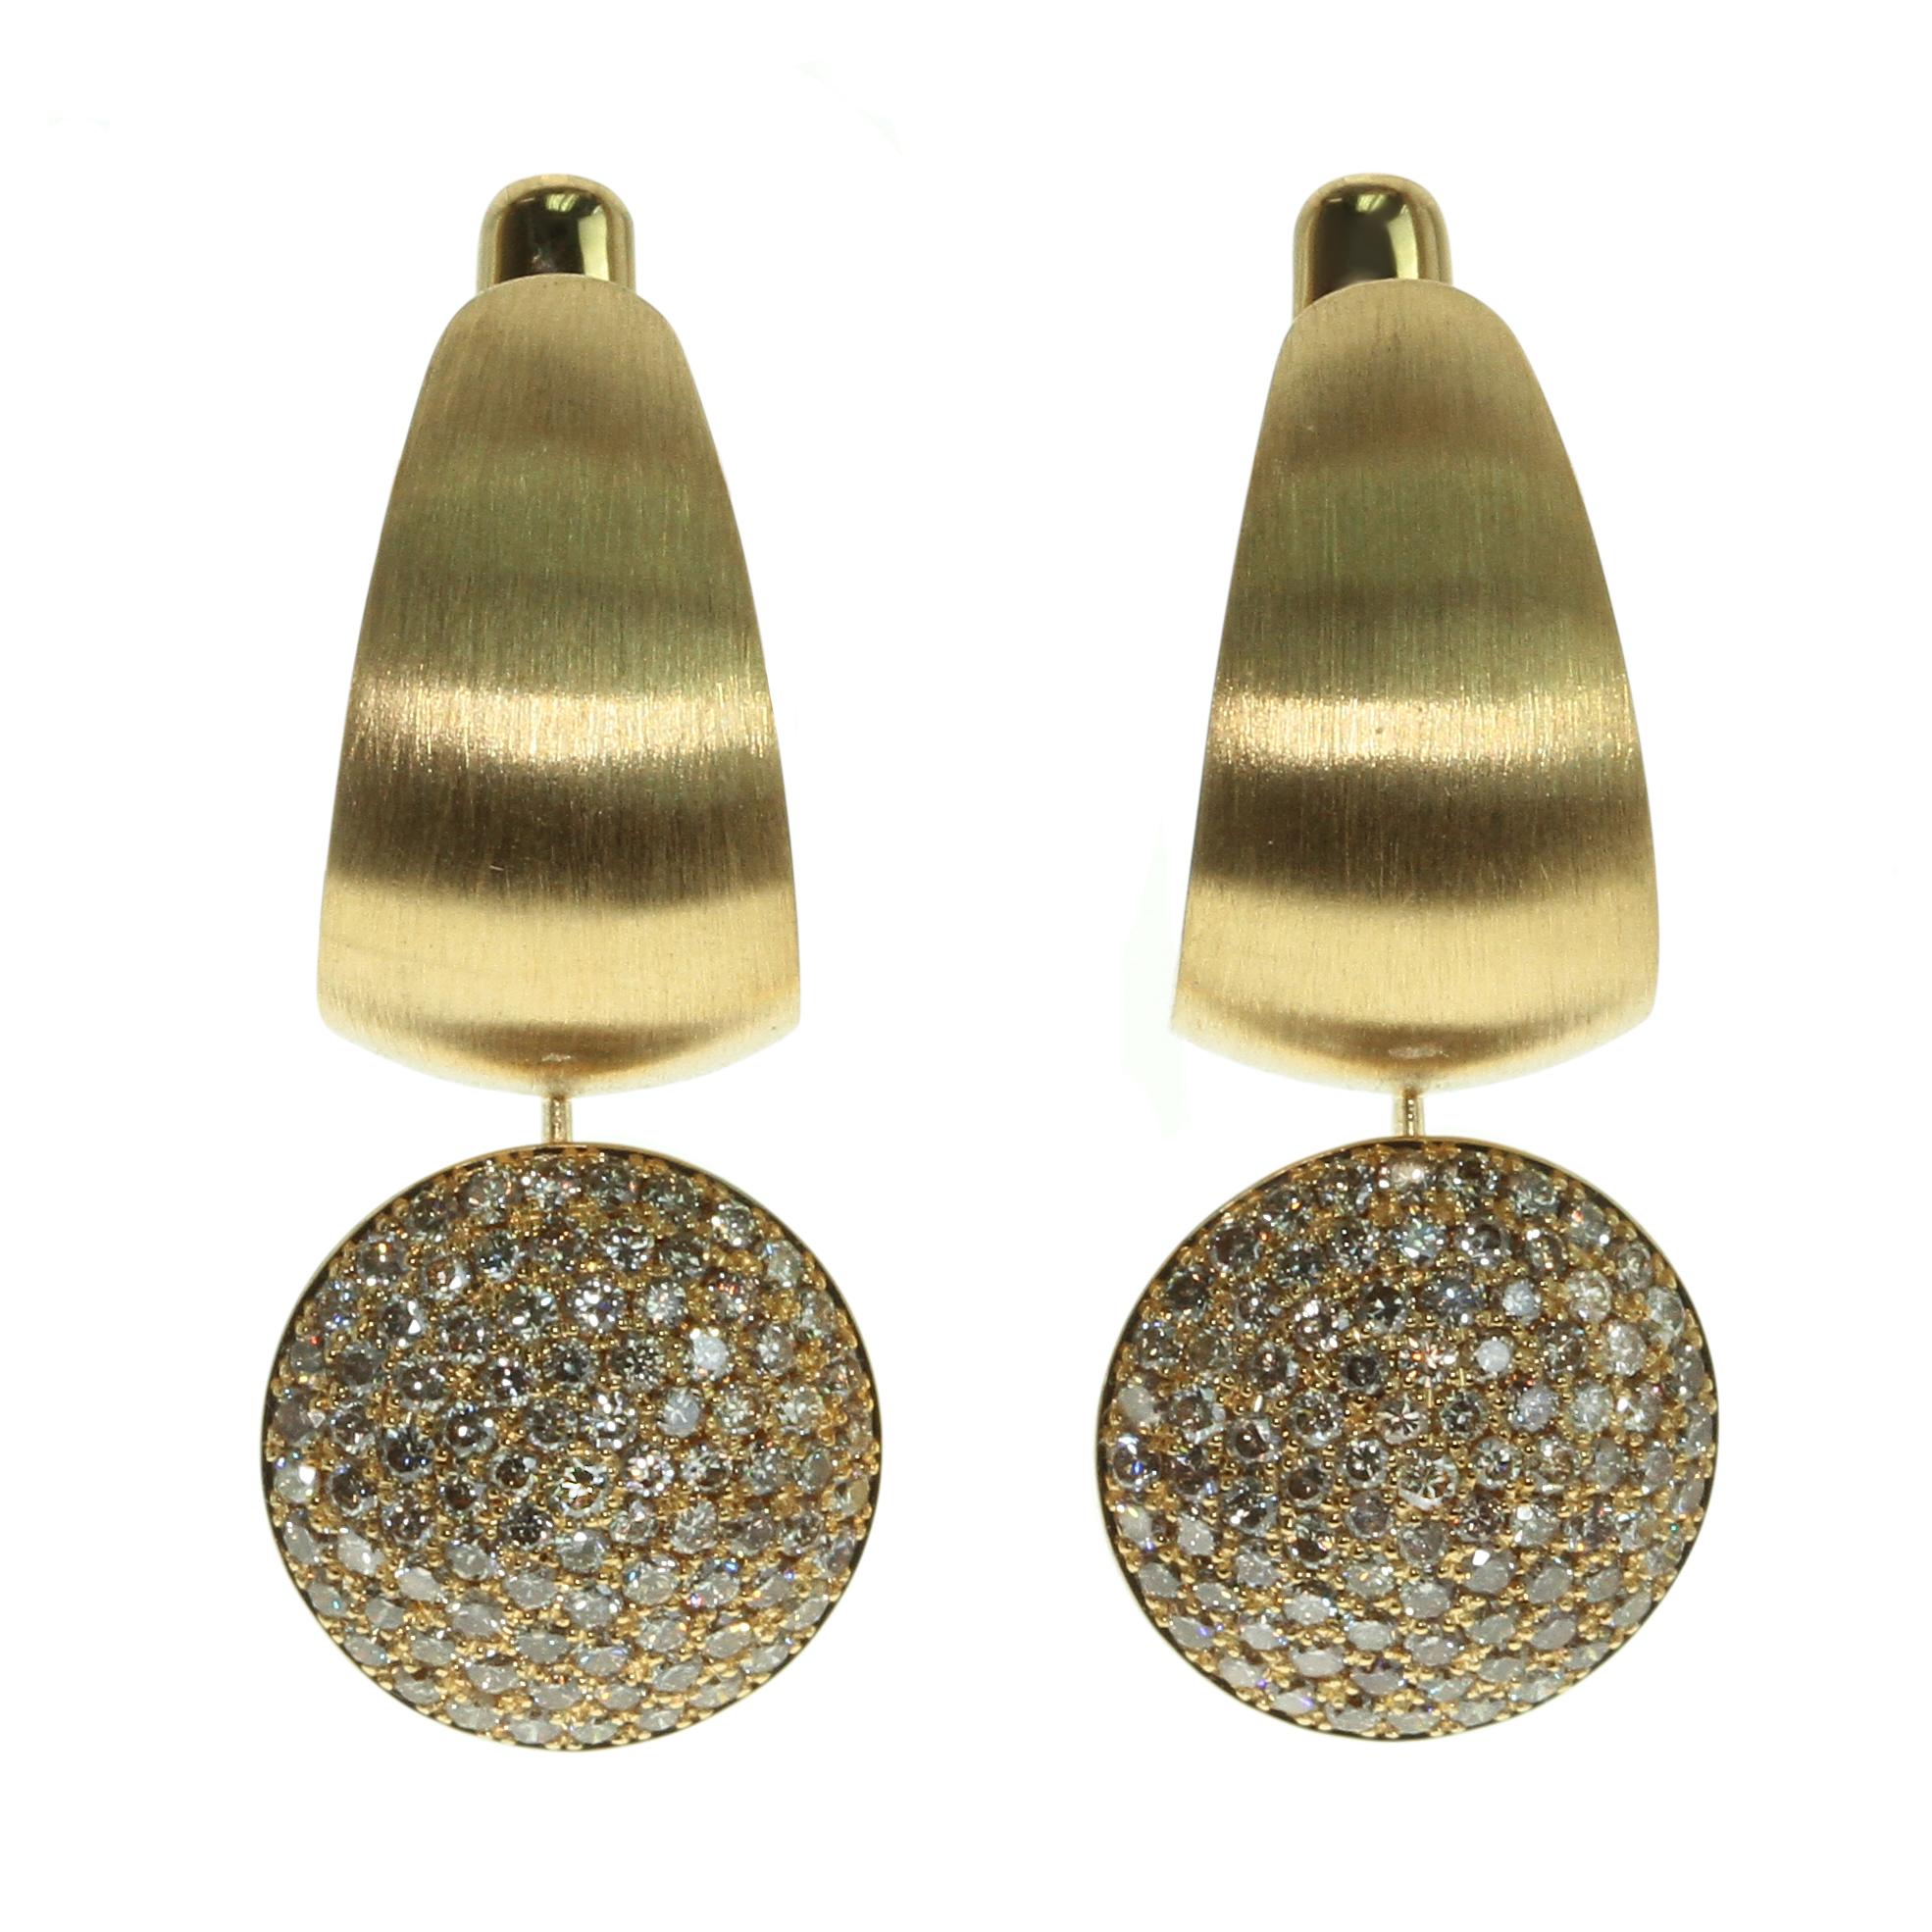 Diamanten Farbige Emaille 18 Karat Gelbgold Kaleidoskop Ring Ohrringe Suite

Werfen Sie einen Blick auf eine unserer Markentexturen in der Kaleidoscope Collection - 